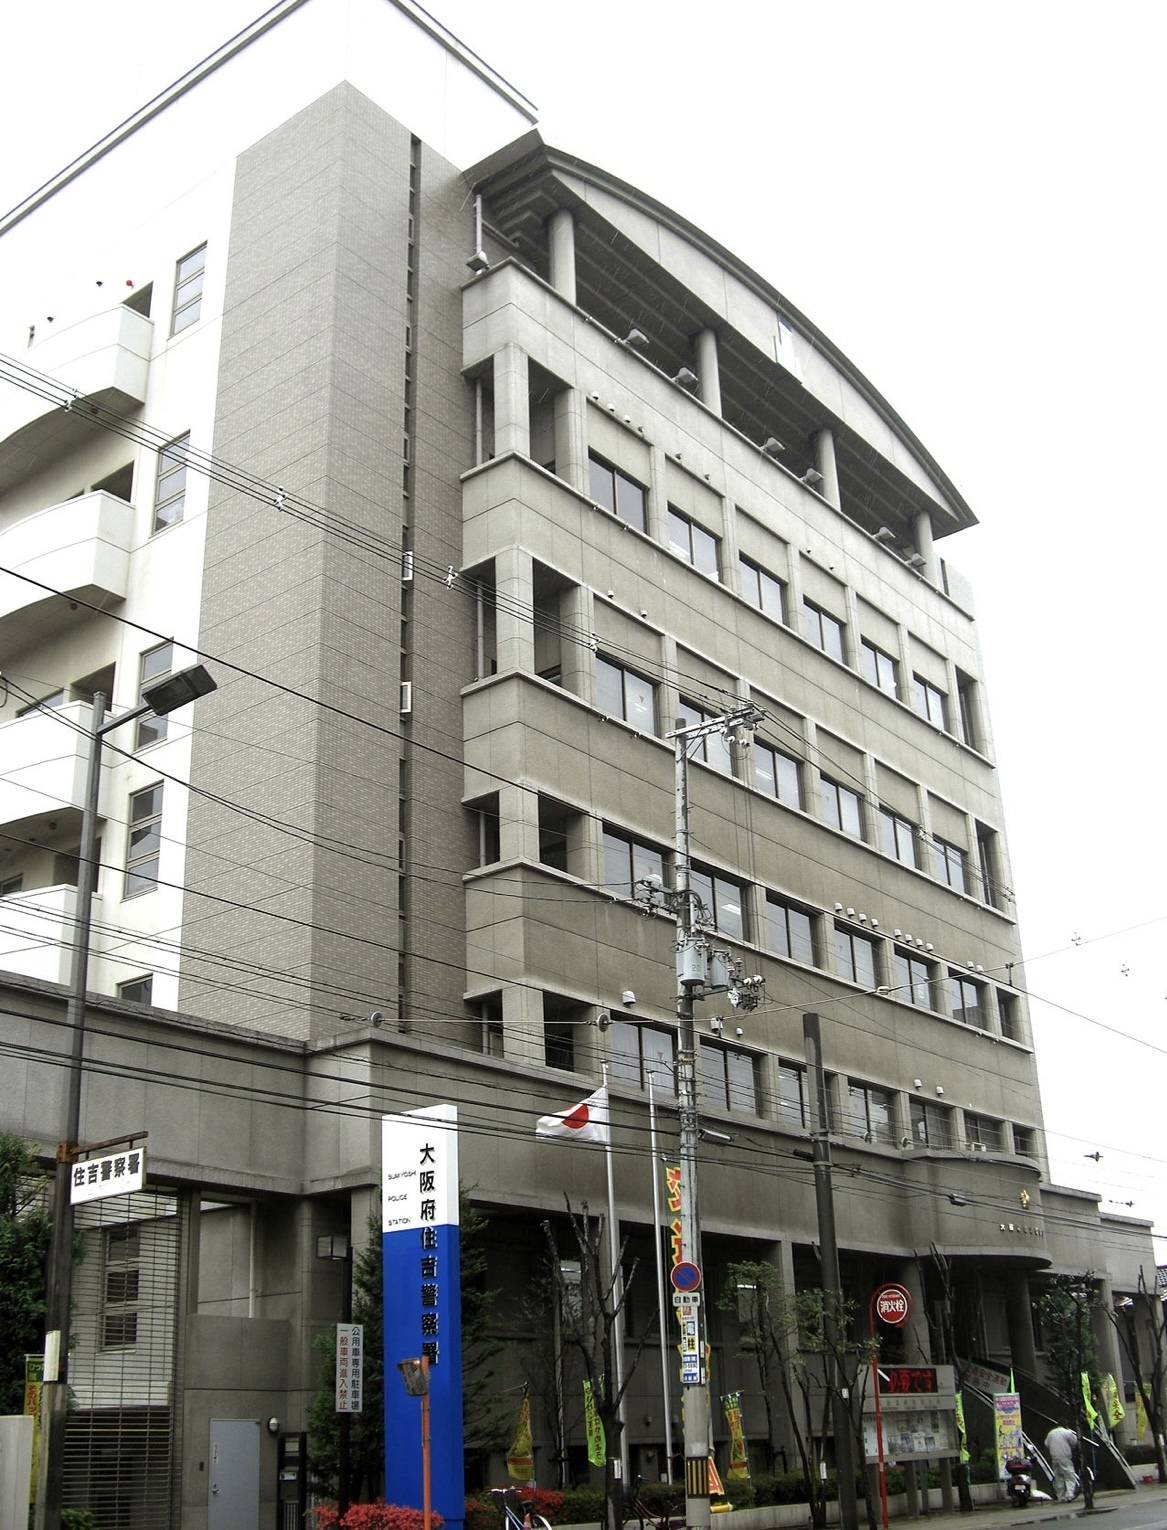 sumiyoshi-police-station